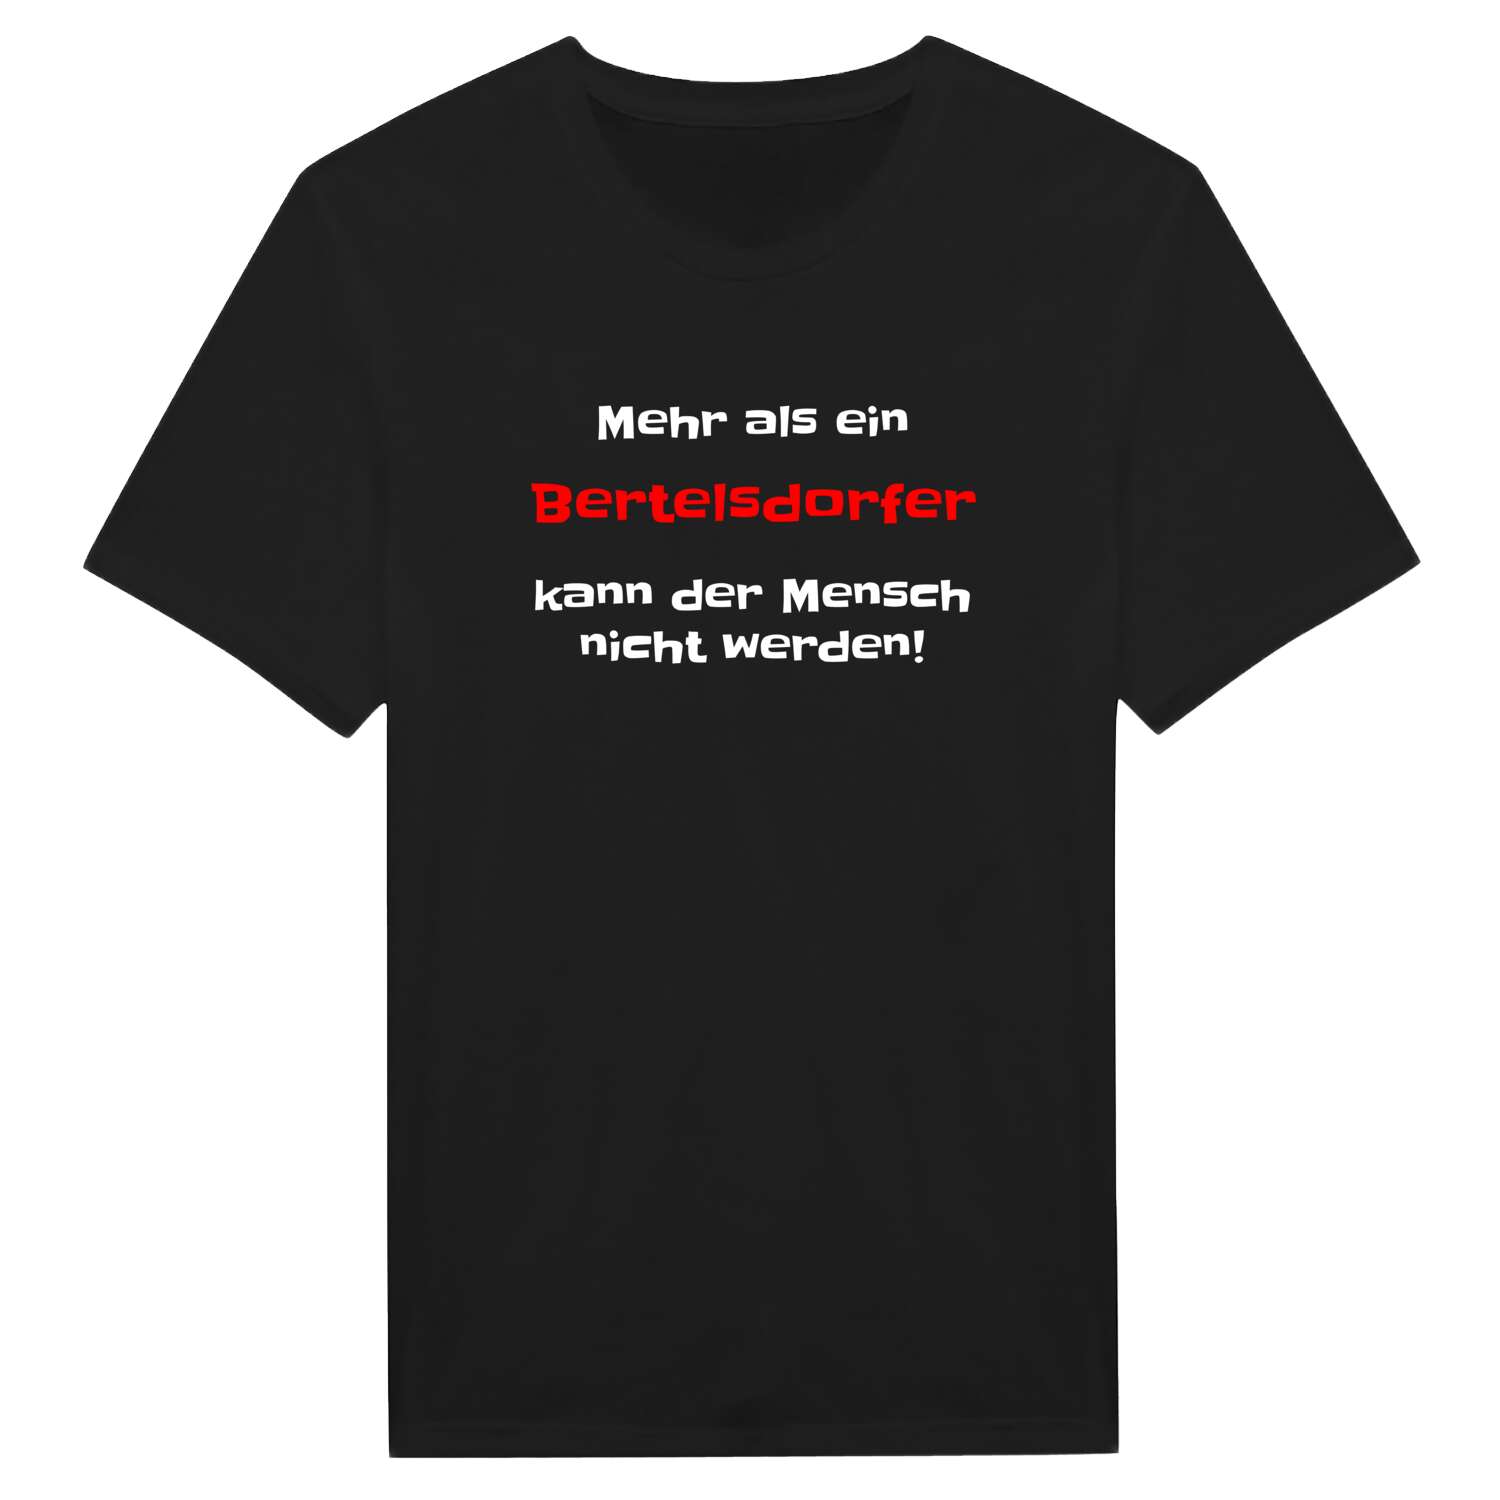 Bertelsdorf T-Shirt »Mehr als ein«